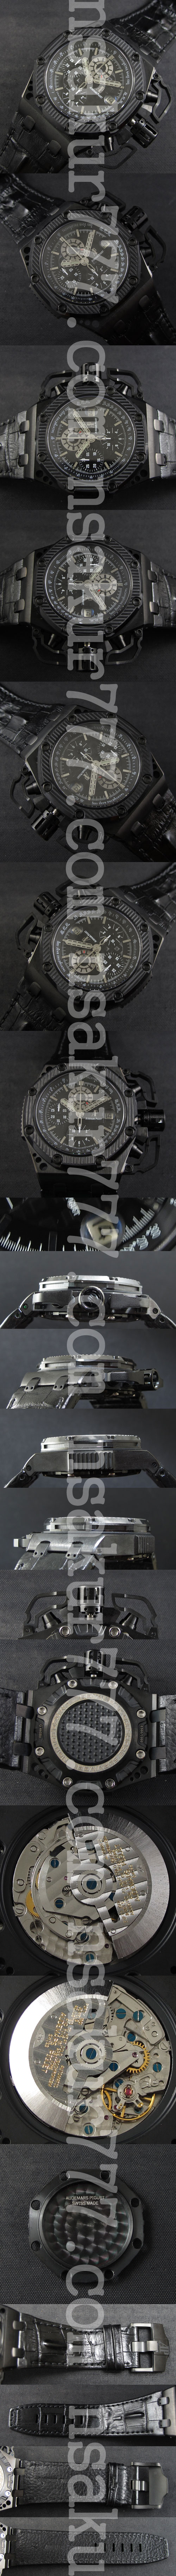 オーデマピゲ腕時計の説明